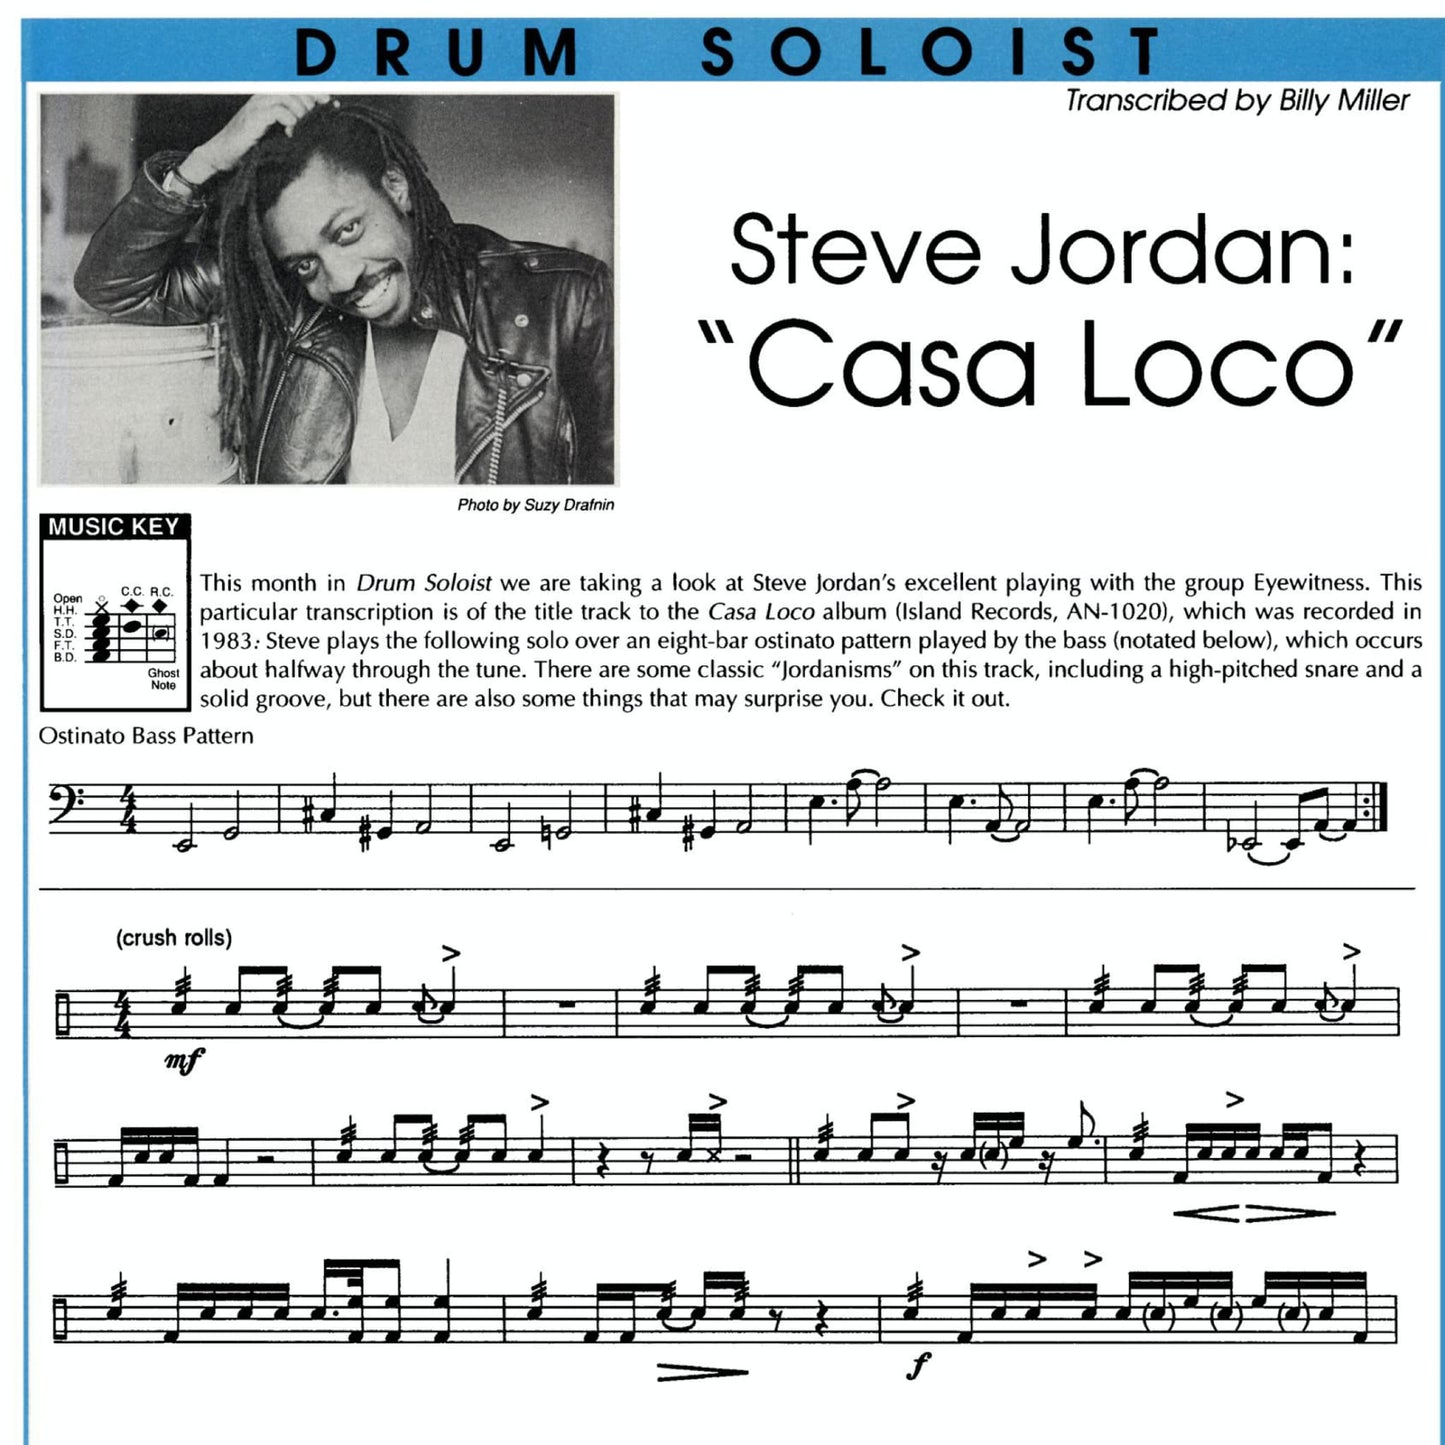 Steve Jordan's "Casa Loco"